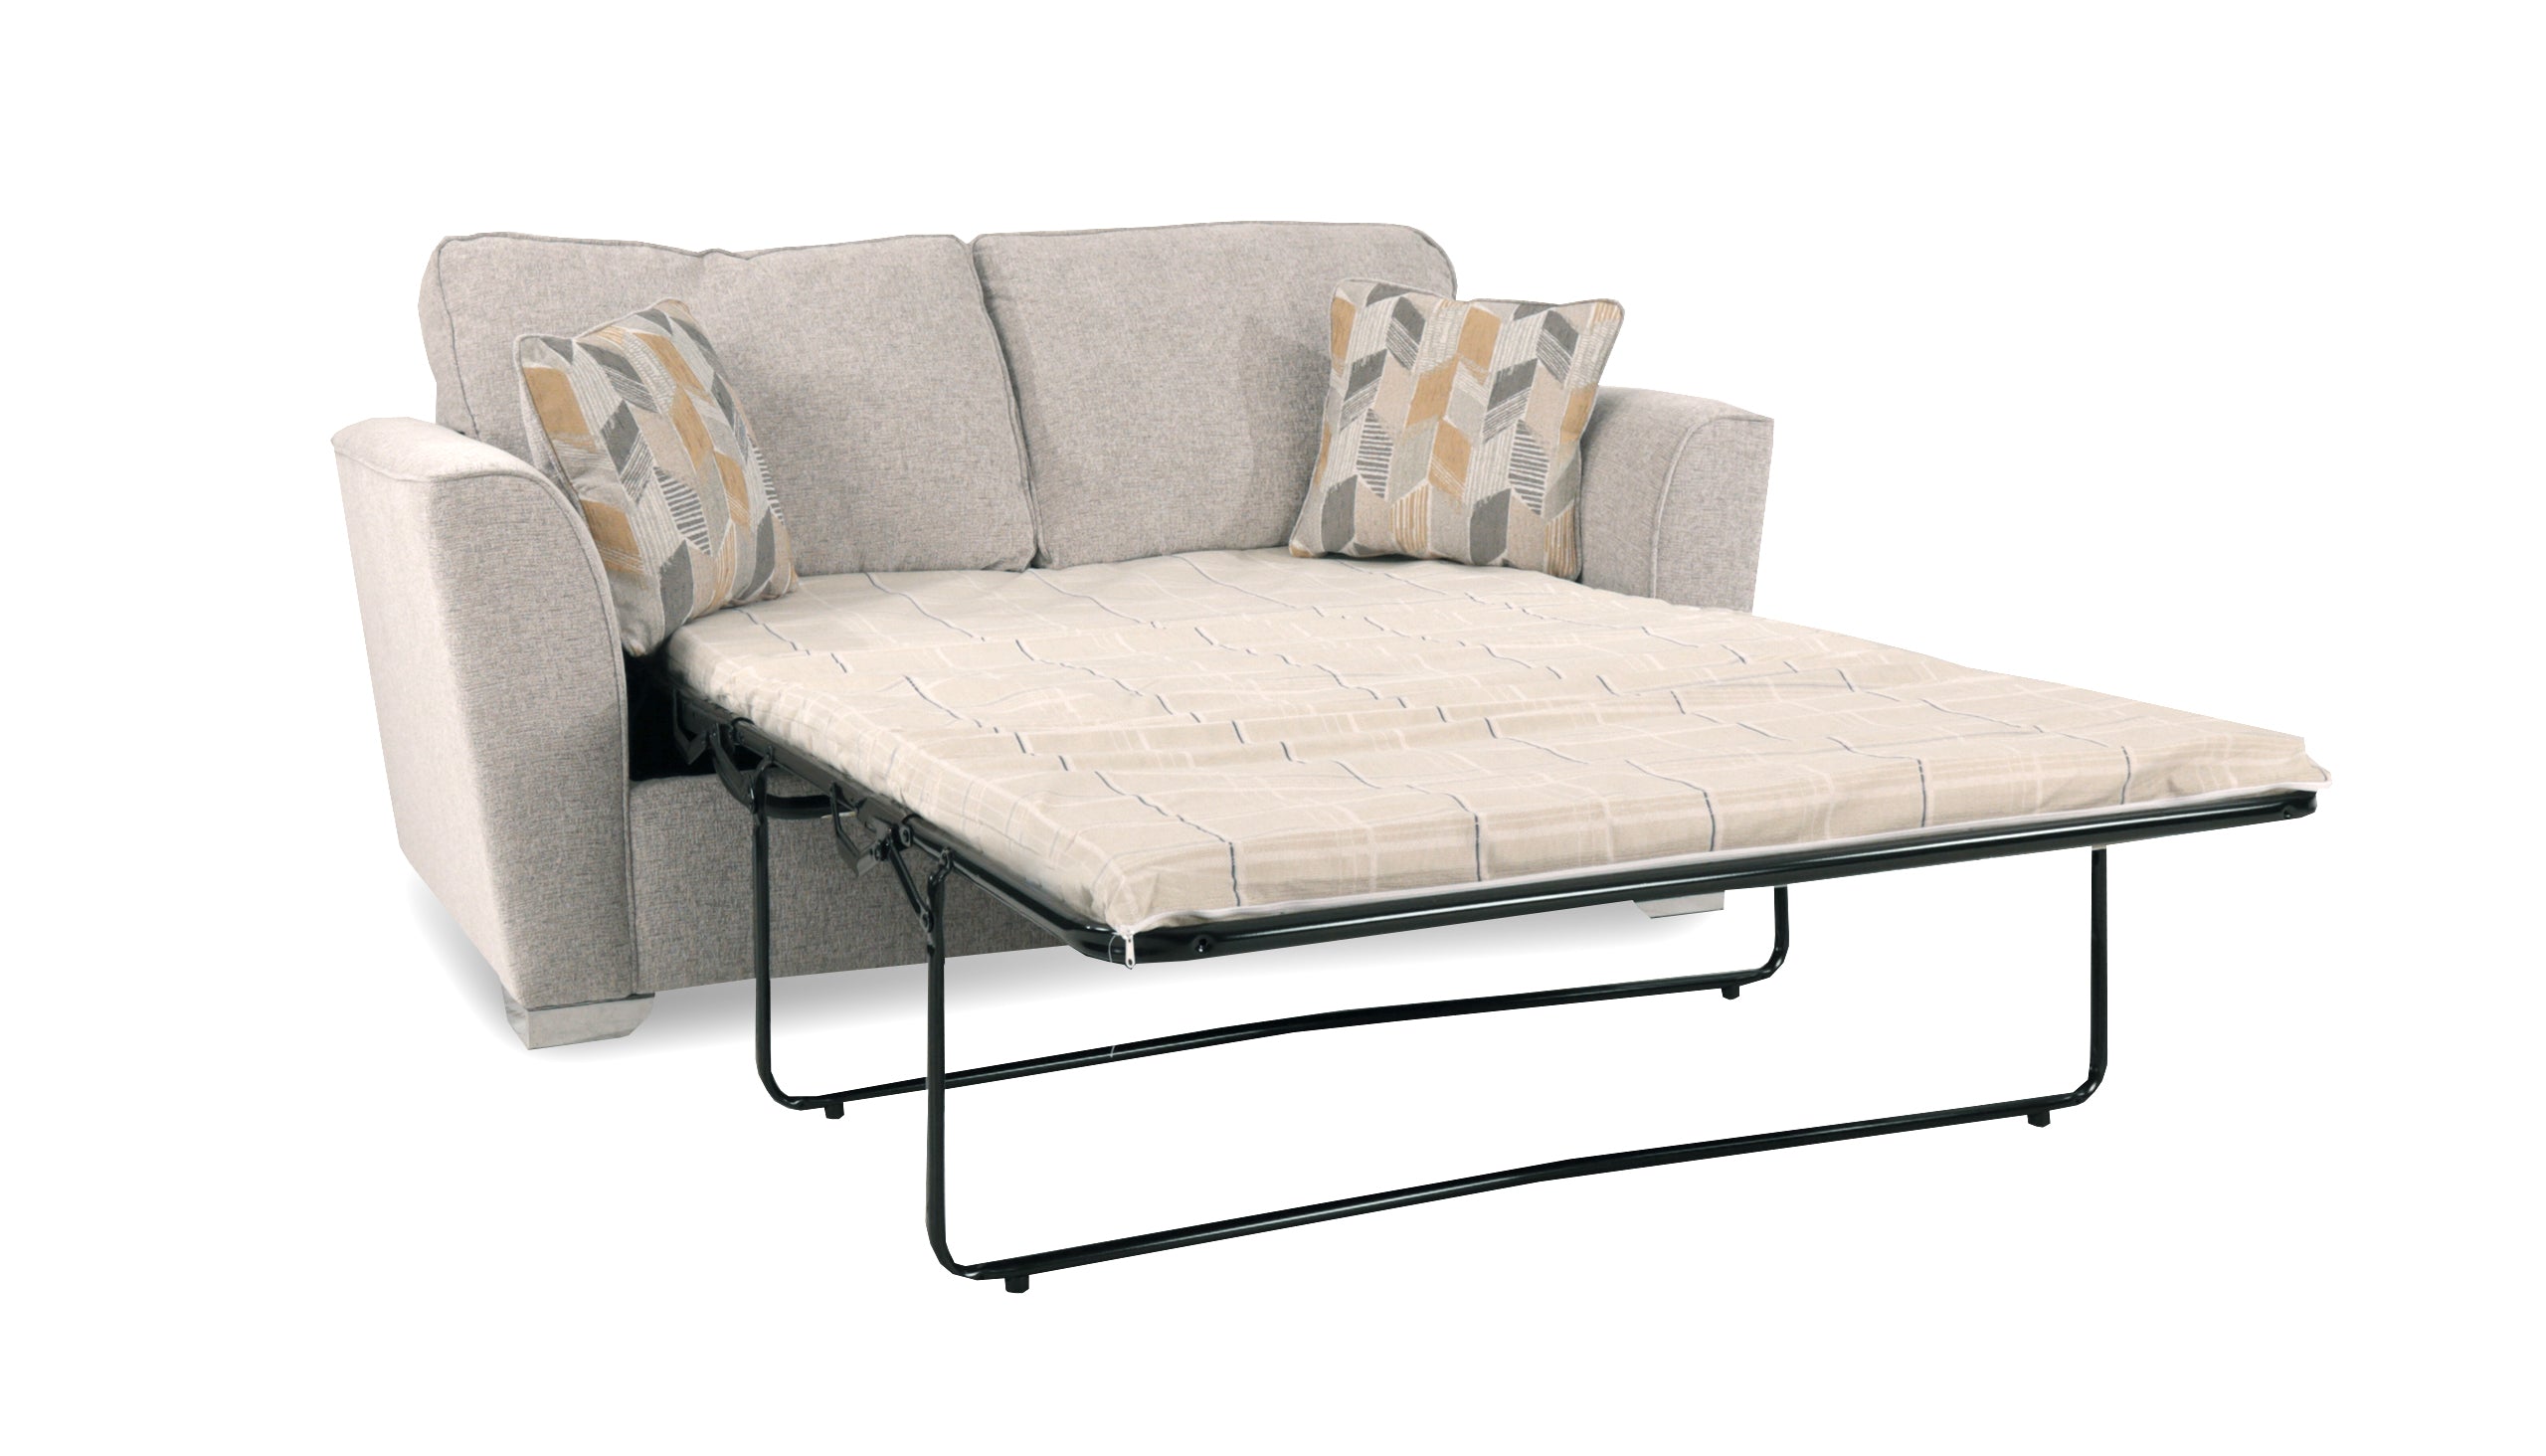 Hepburn 120cm Standard Sofa Bed